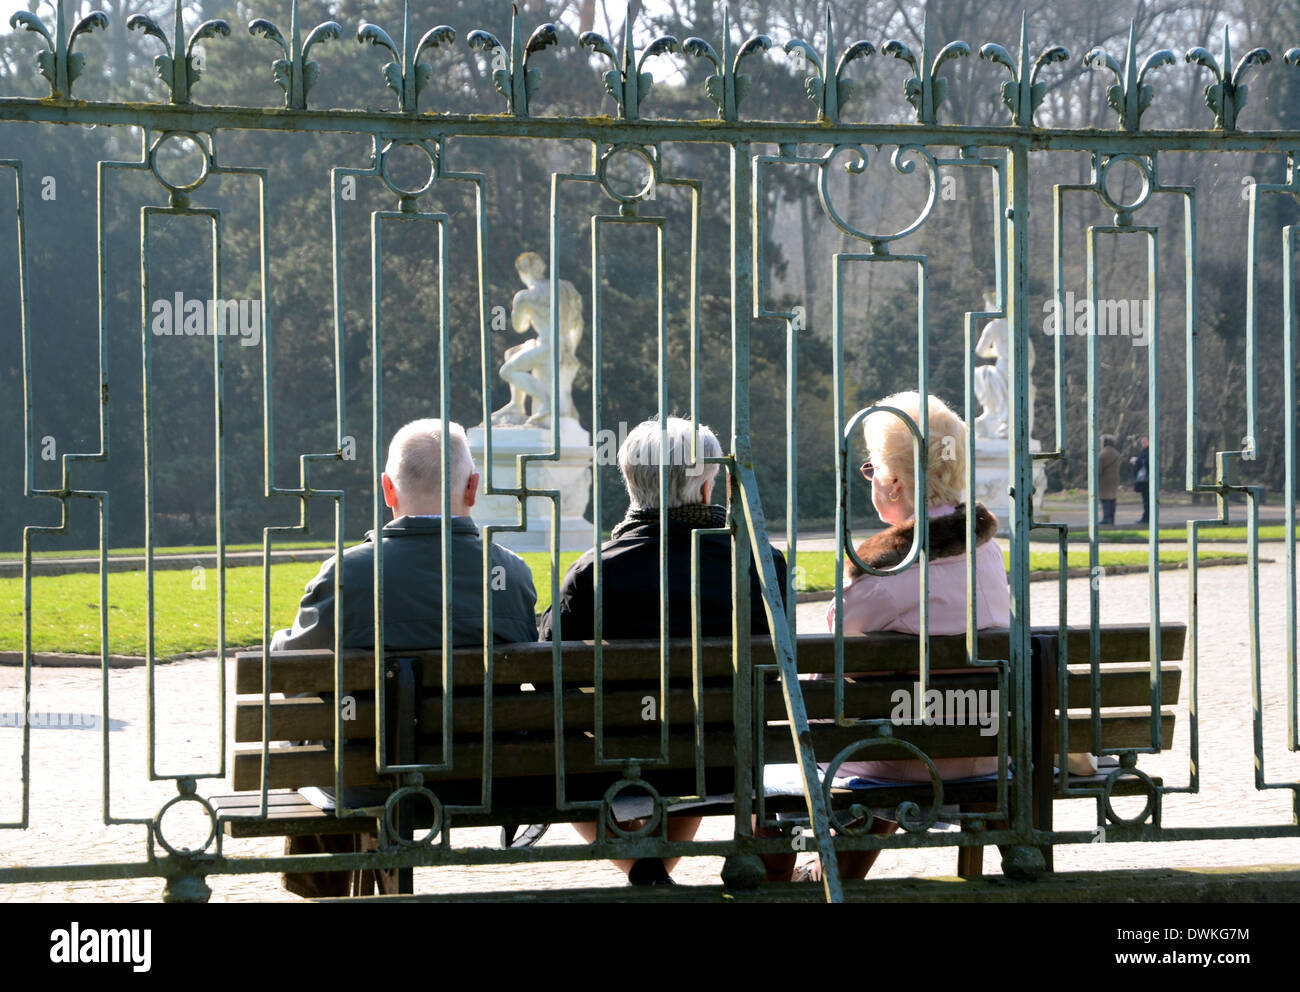 Bei Sonnenschein sitzen strahlendem am 06.03.2014 en Düsseldorf (Nordrhein-Westfalen) Rentner auf einer banco en einer Parkanlage. Foto: Horst Ossinger/dpa Foto de stock